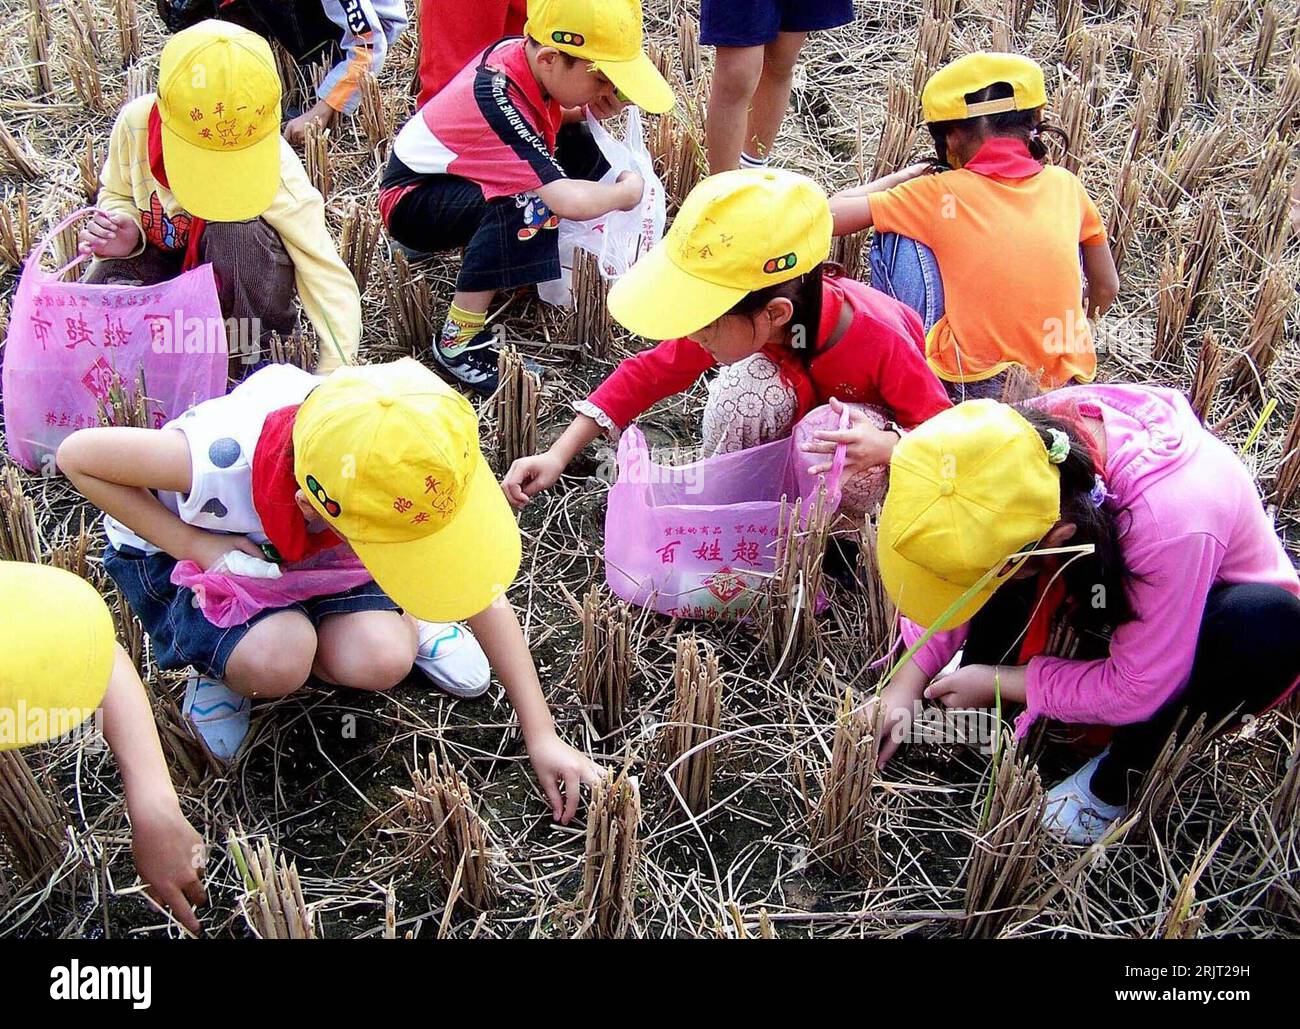 Bildnummer: 51543524  Datum: 01.11.2006  Copyright: imago/Xinhua Schüler einer Grundschule sammeln Reiskörner auf einem abgeernteten Reisfeld anlässlich der Weltspartags in Zhaoping Schüler einer Grundschule sammeln Reiskörner auf einem abgeernteten Reisfeld anlässlich der Weltspartags in Zhaoping - China -PUBLICATIONxNOTxINxCHN, Personen; 2006, Zhaoping, Guangxi, Kinder, Erstklässer, Schülerin, Kind, Mädchen, Jungen, Schulkinder, Reisfelder, Nahrungsmittel, Lebensmittel, Sparsamkeit, Weltspartag, aufsammeln, auflesen, Fleißarbeit, fleißig, Geduld, geduldig, Fleiß, Reiskorn, Grundschüler,; , q Stock Photo